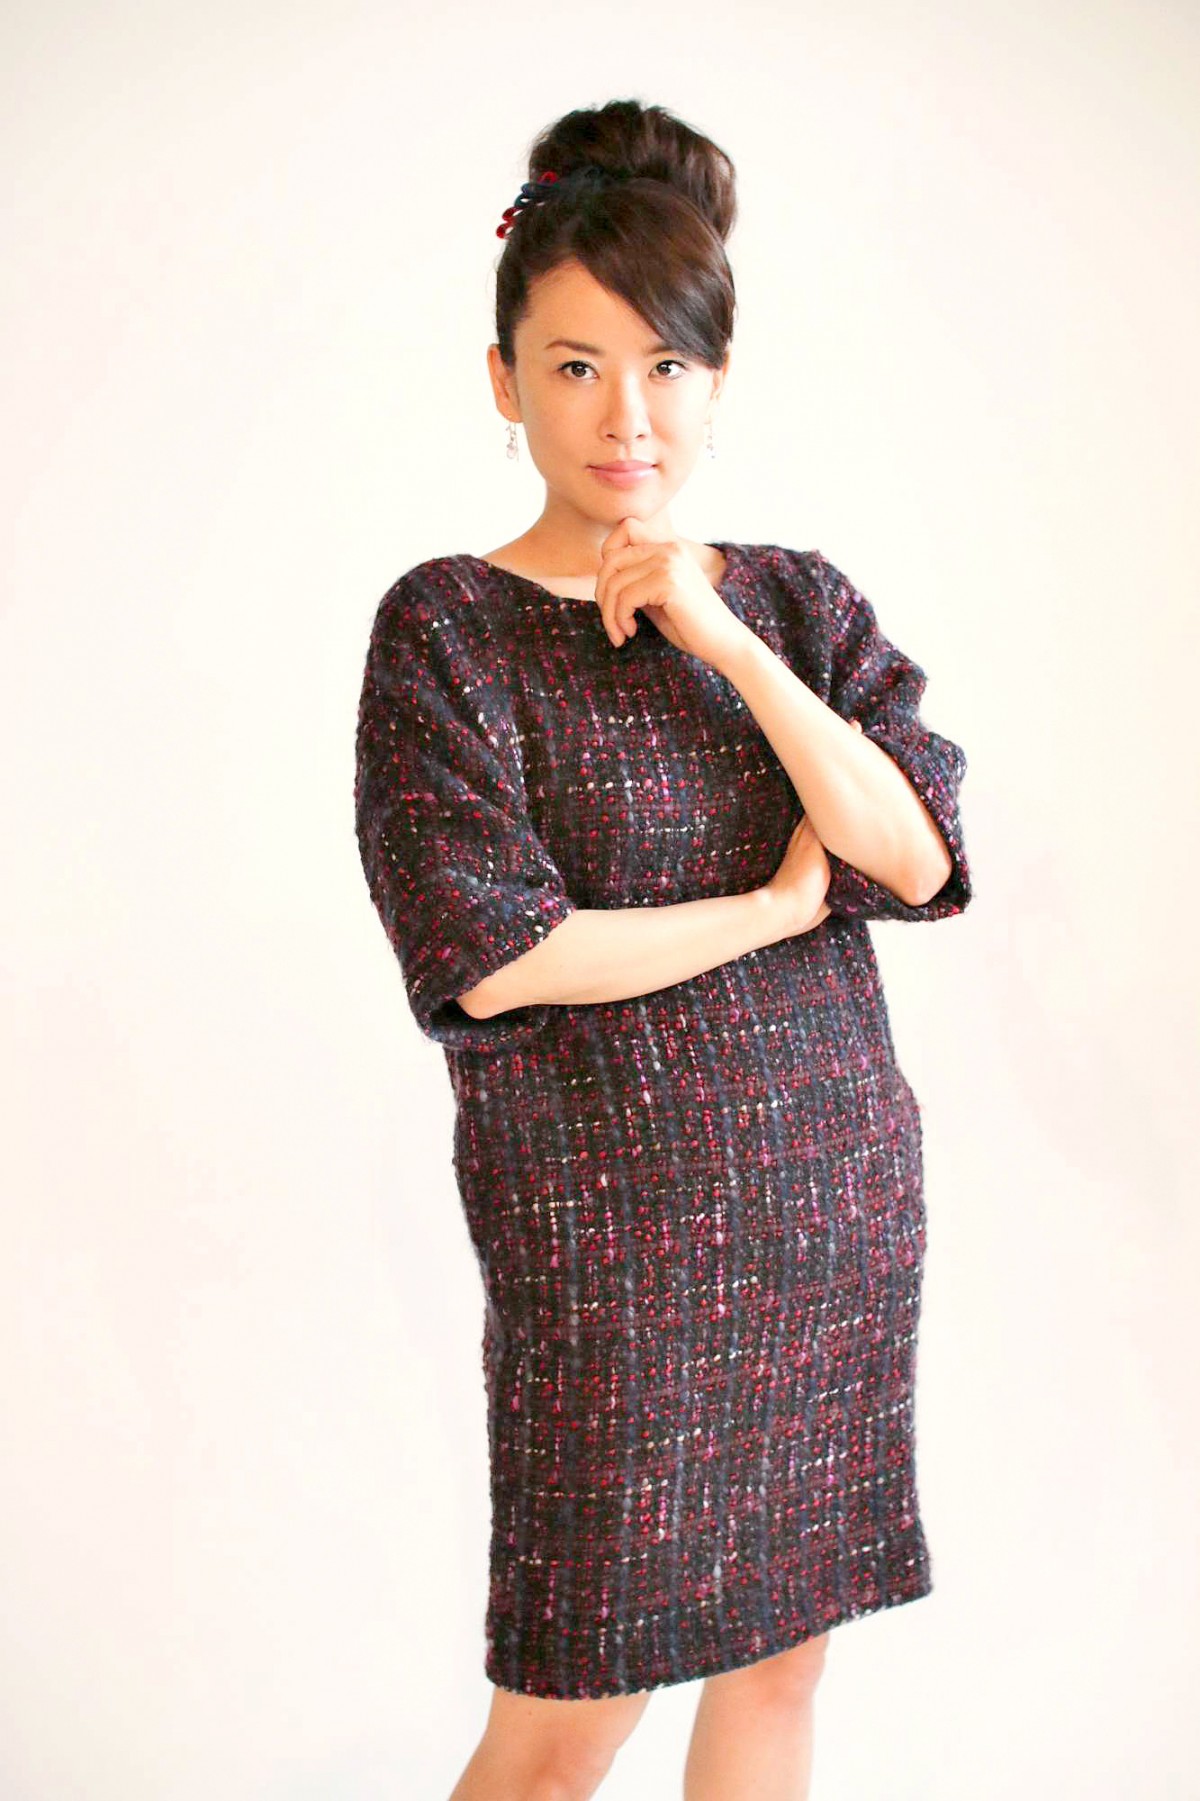 鈴木砂羽、初監督作に自信「120％引き出せた」主演女優の“こけしフェイス”が魅力